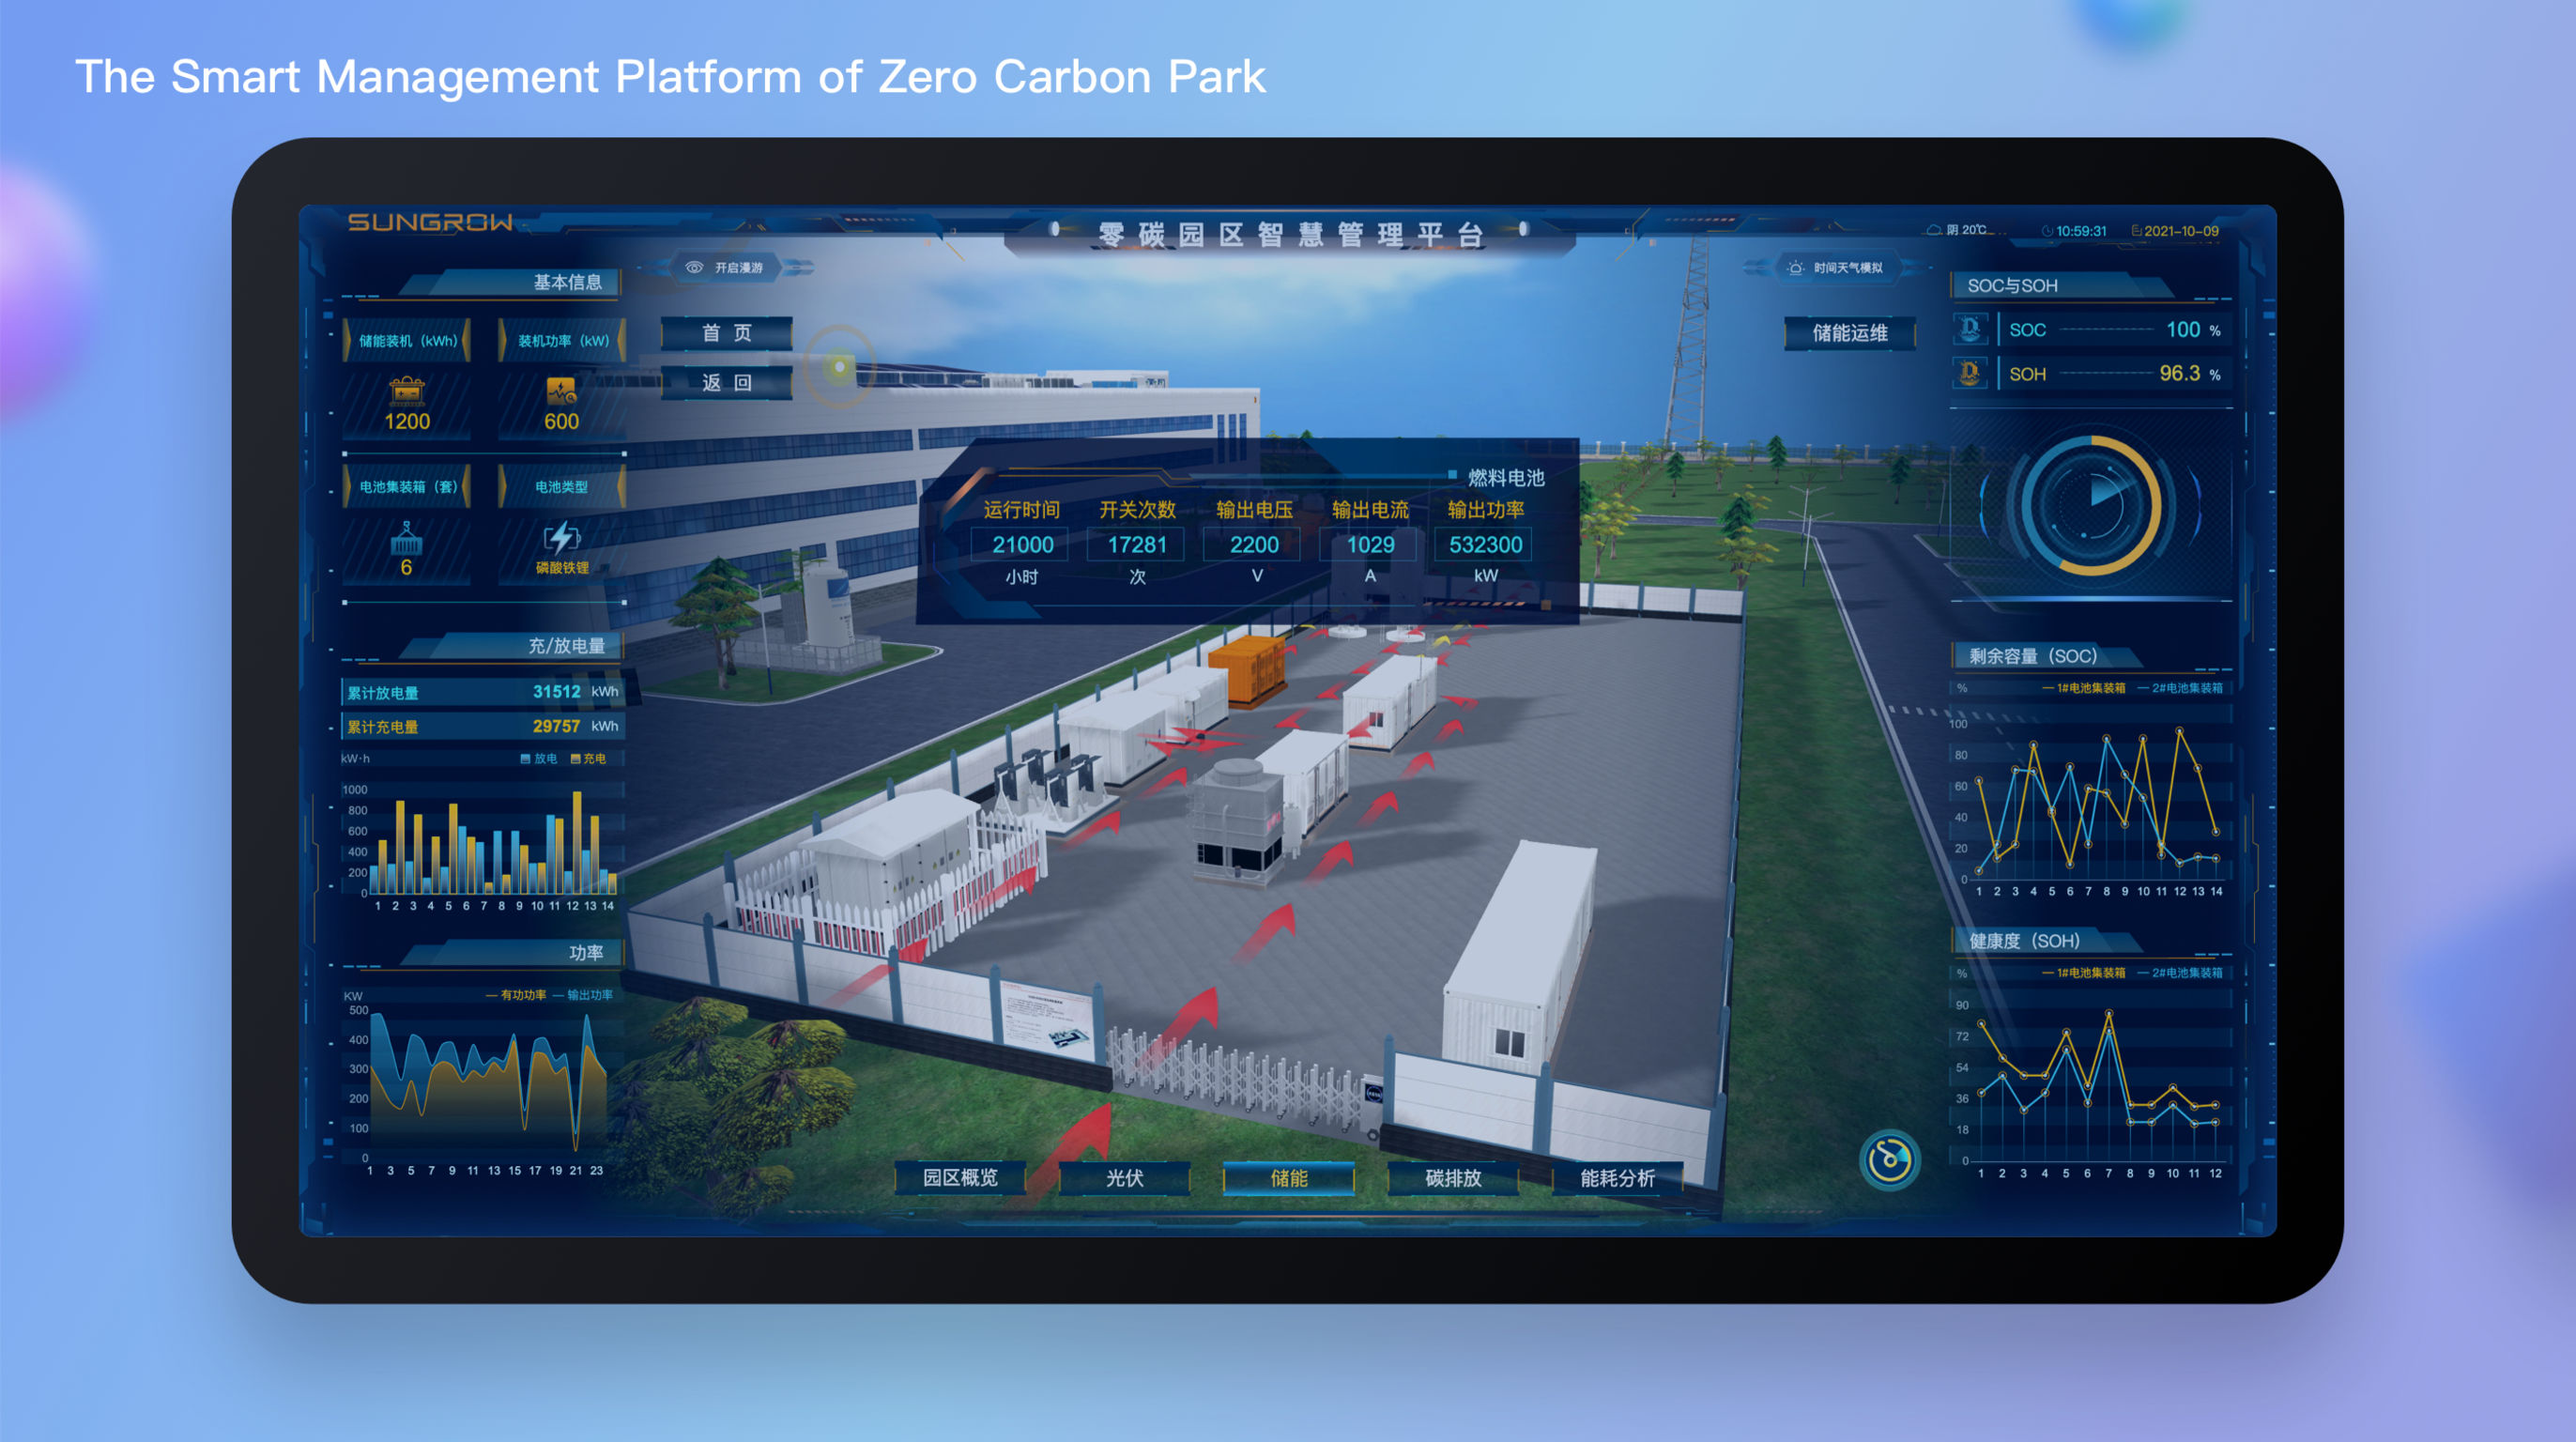 The Smart Management Platform of Zero Carbon Park